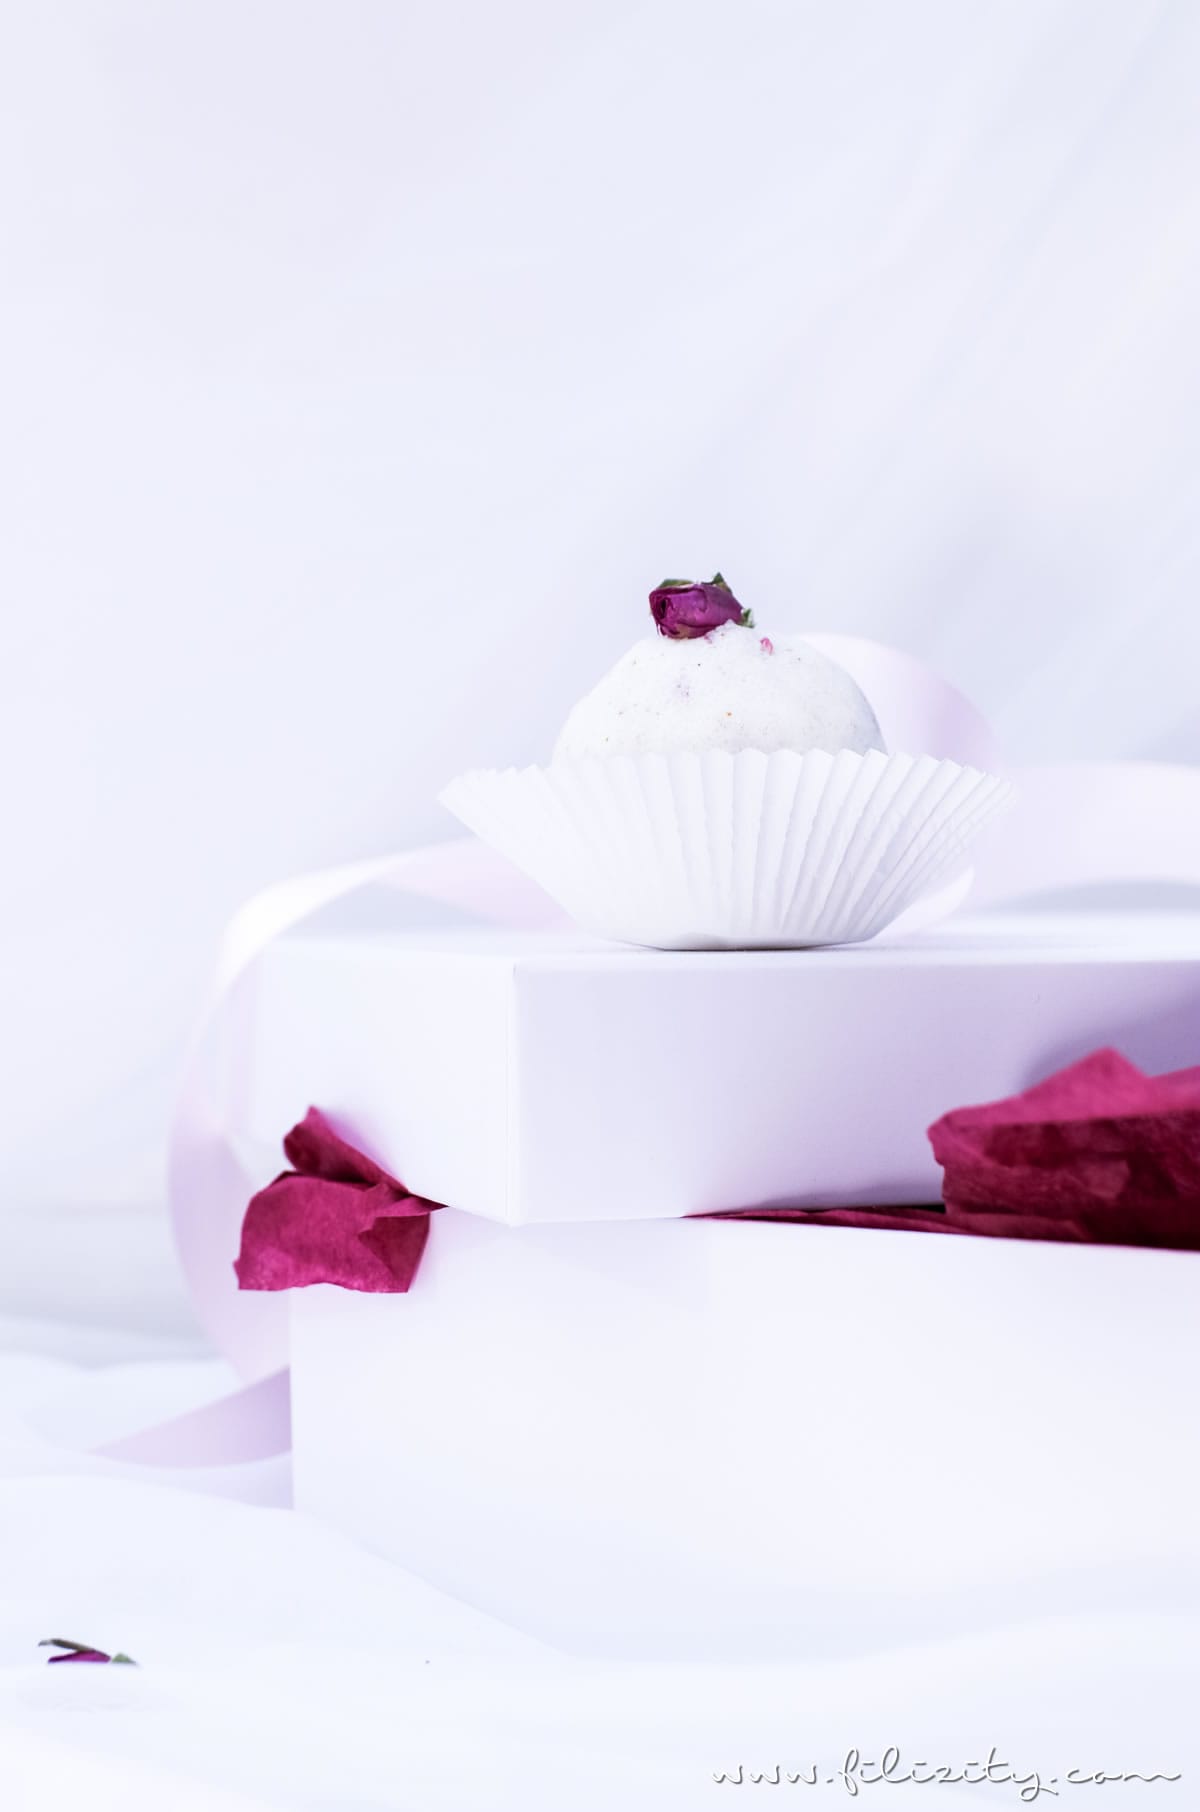 DIY Badebomben mit Rosen selber machen - Wellness & Geschenkidee für Valentinstag | Filizity.com | Beauty- & DIY-Blog aus dem Rheinland #valentinstag #geschenkidee #muttertag